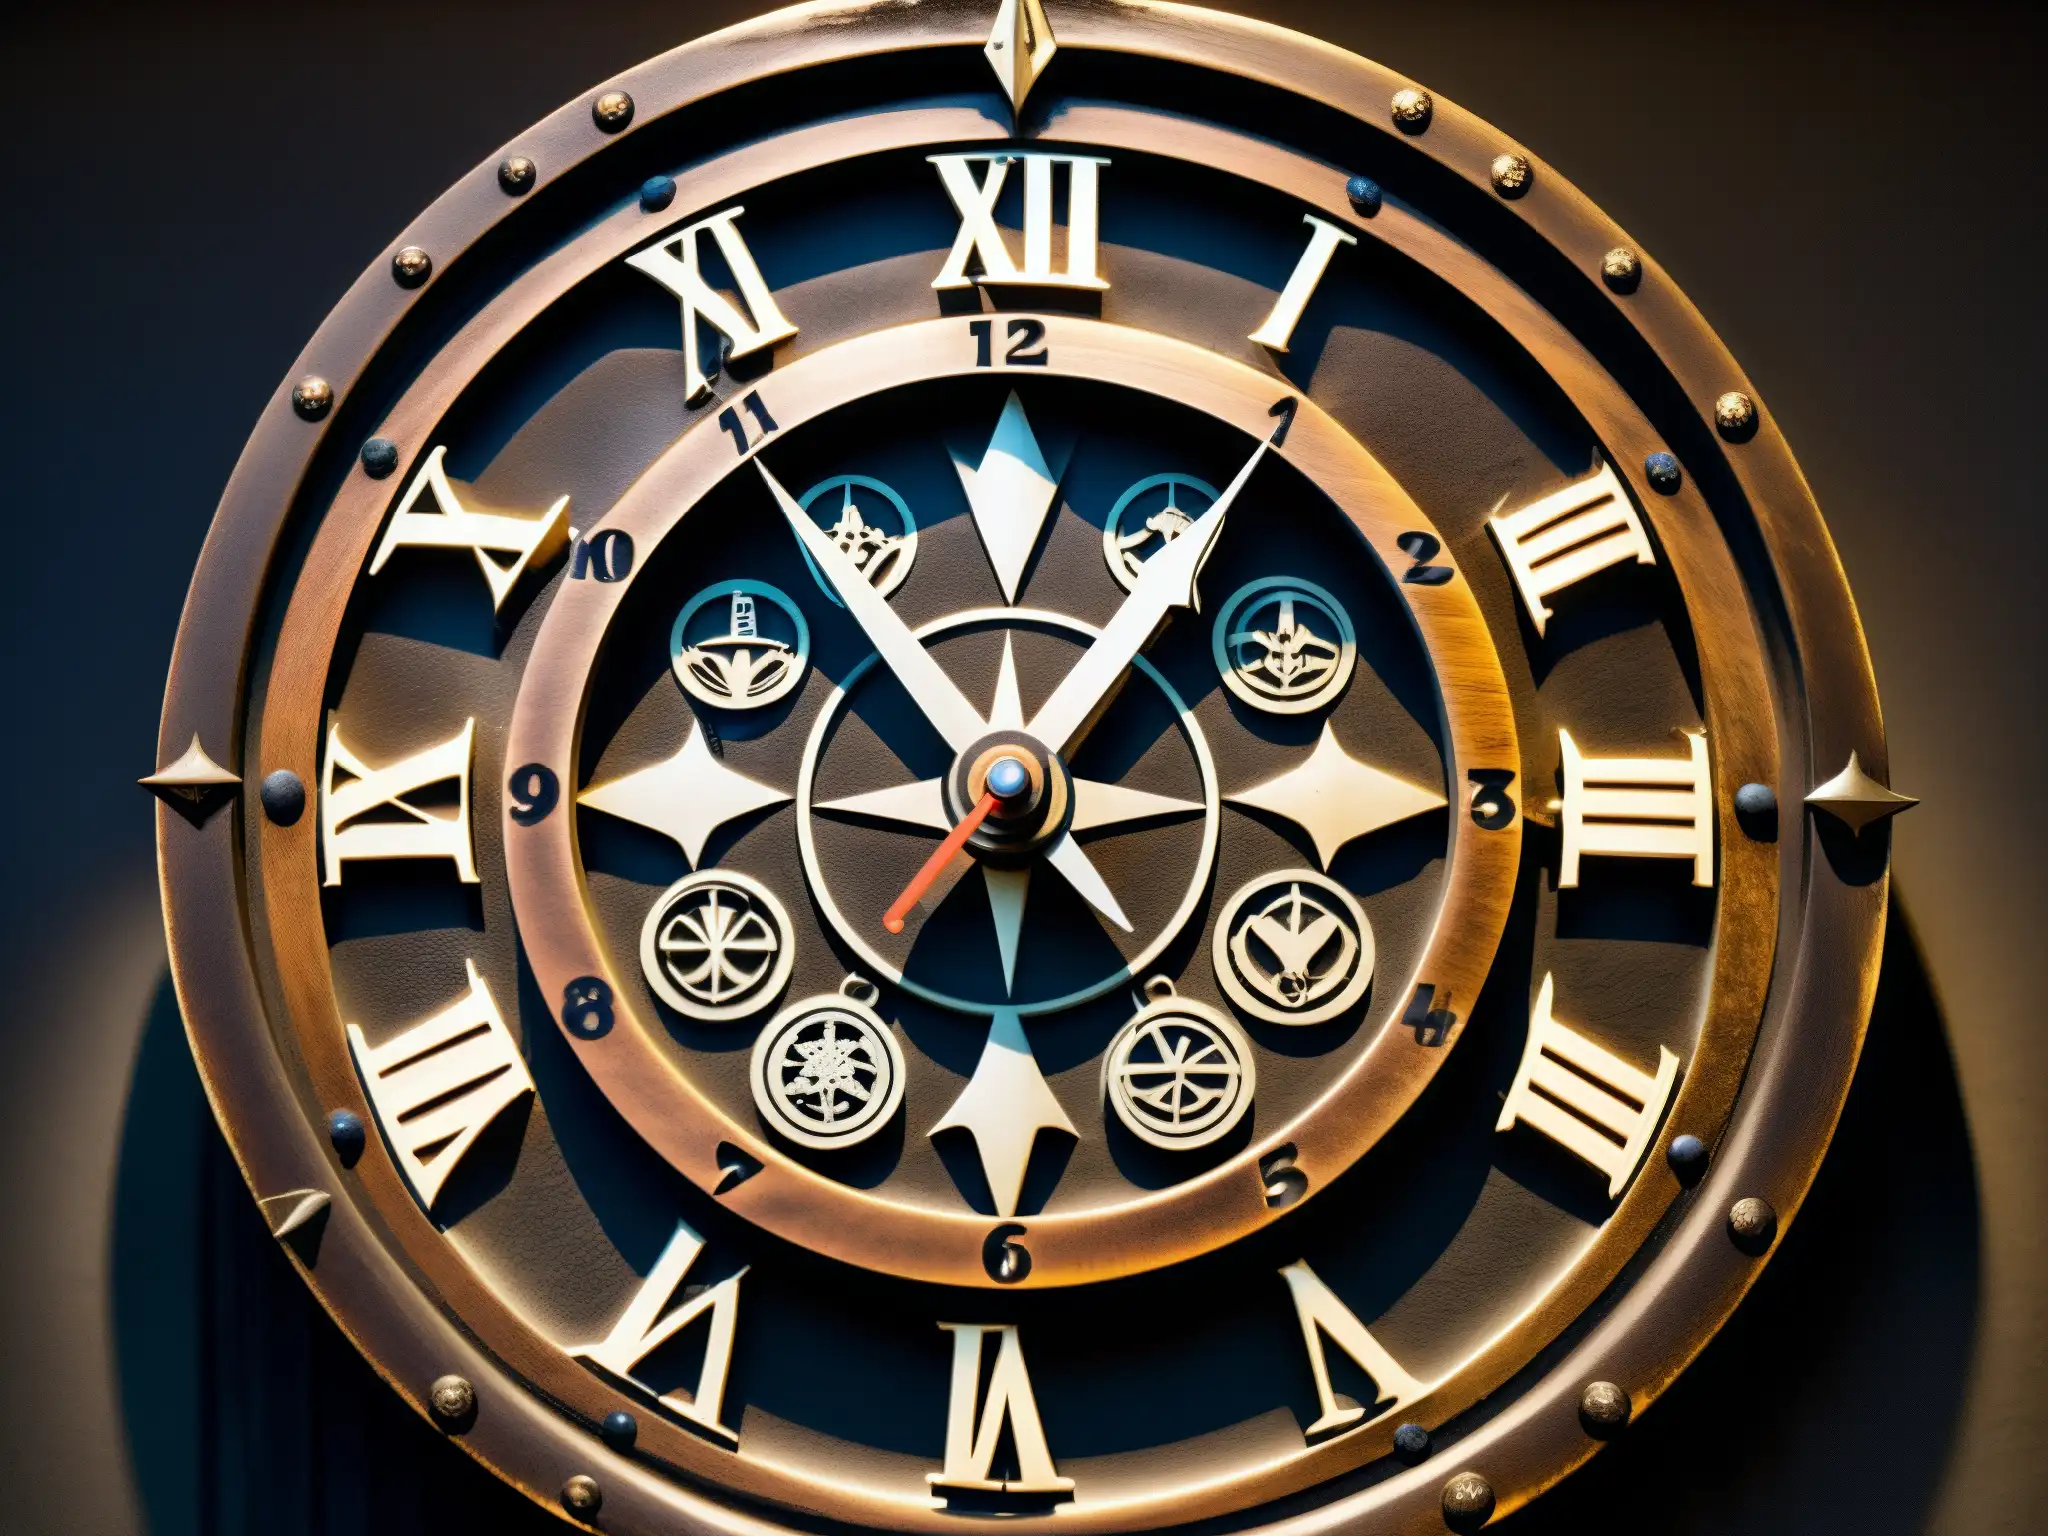 El Reloj Maldito de Myojin: Intrincadas marcas y carvings en la superficie timeworn, con una atmósfera ominosa y misteriosa